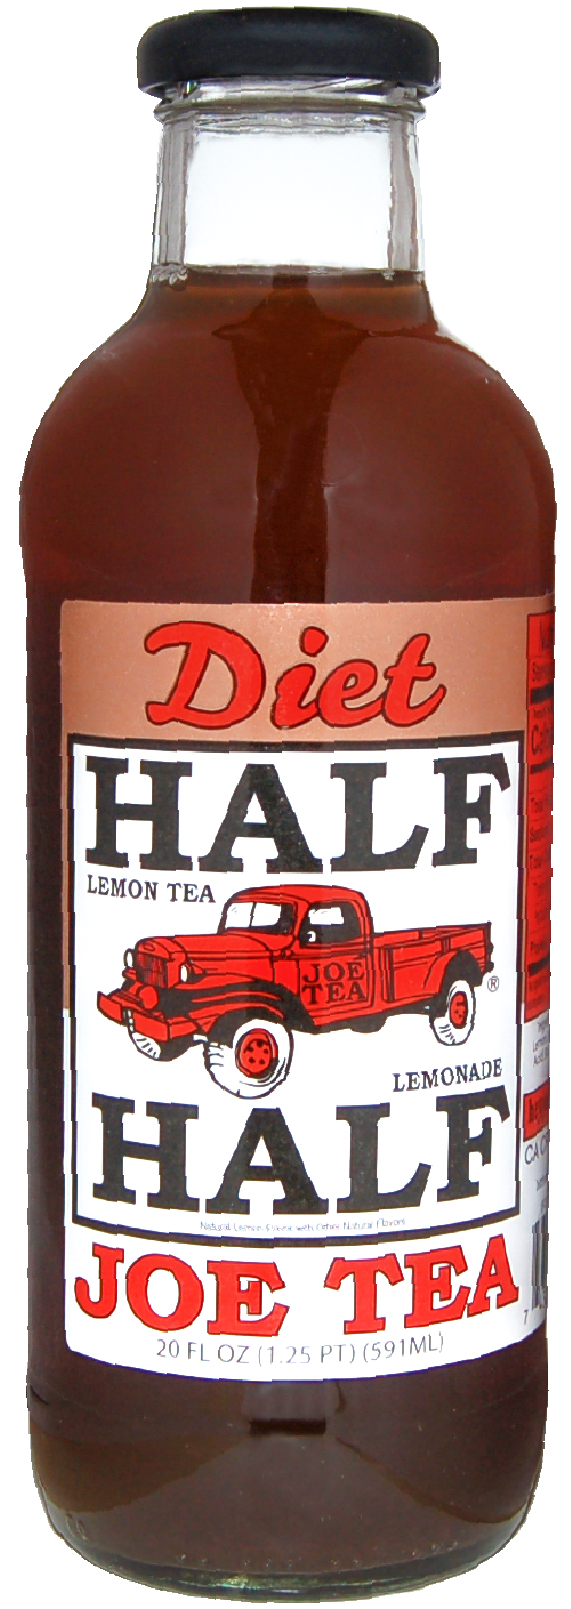 diet half and half glass bottle